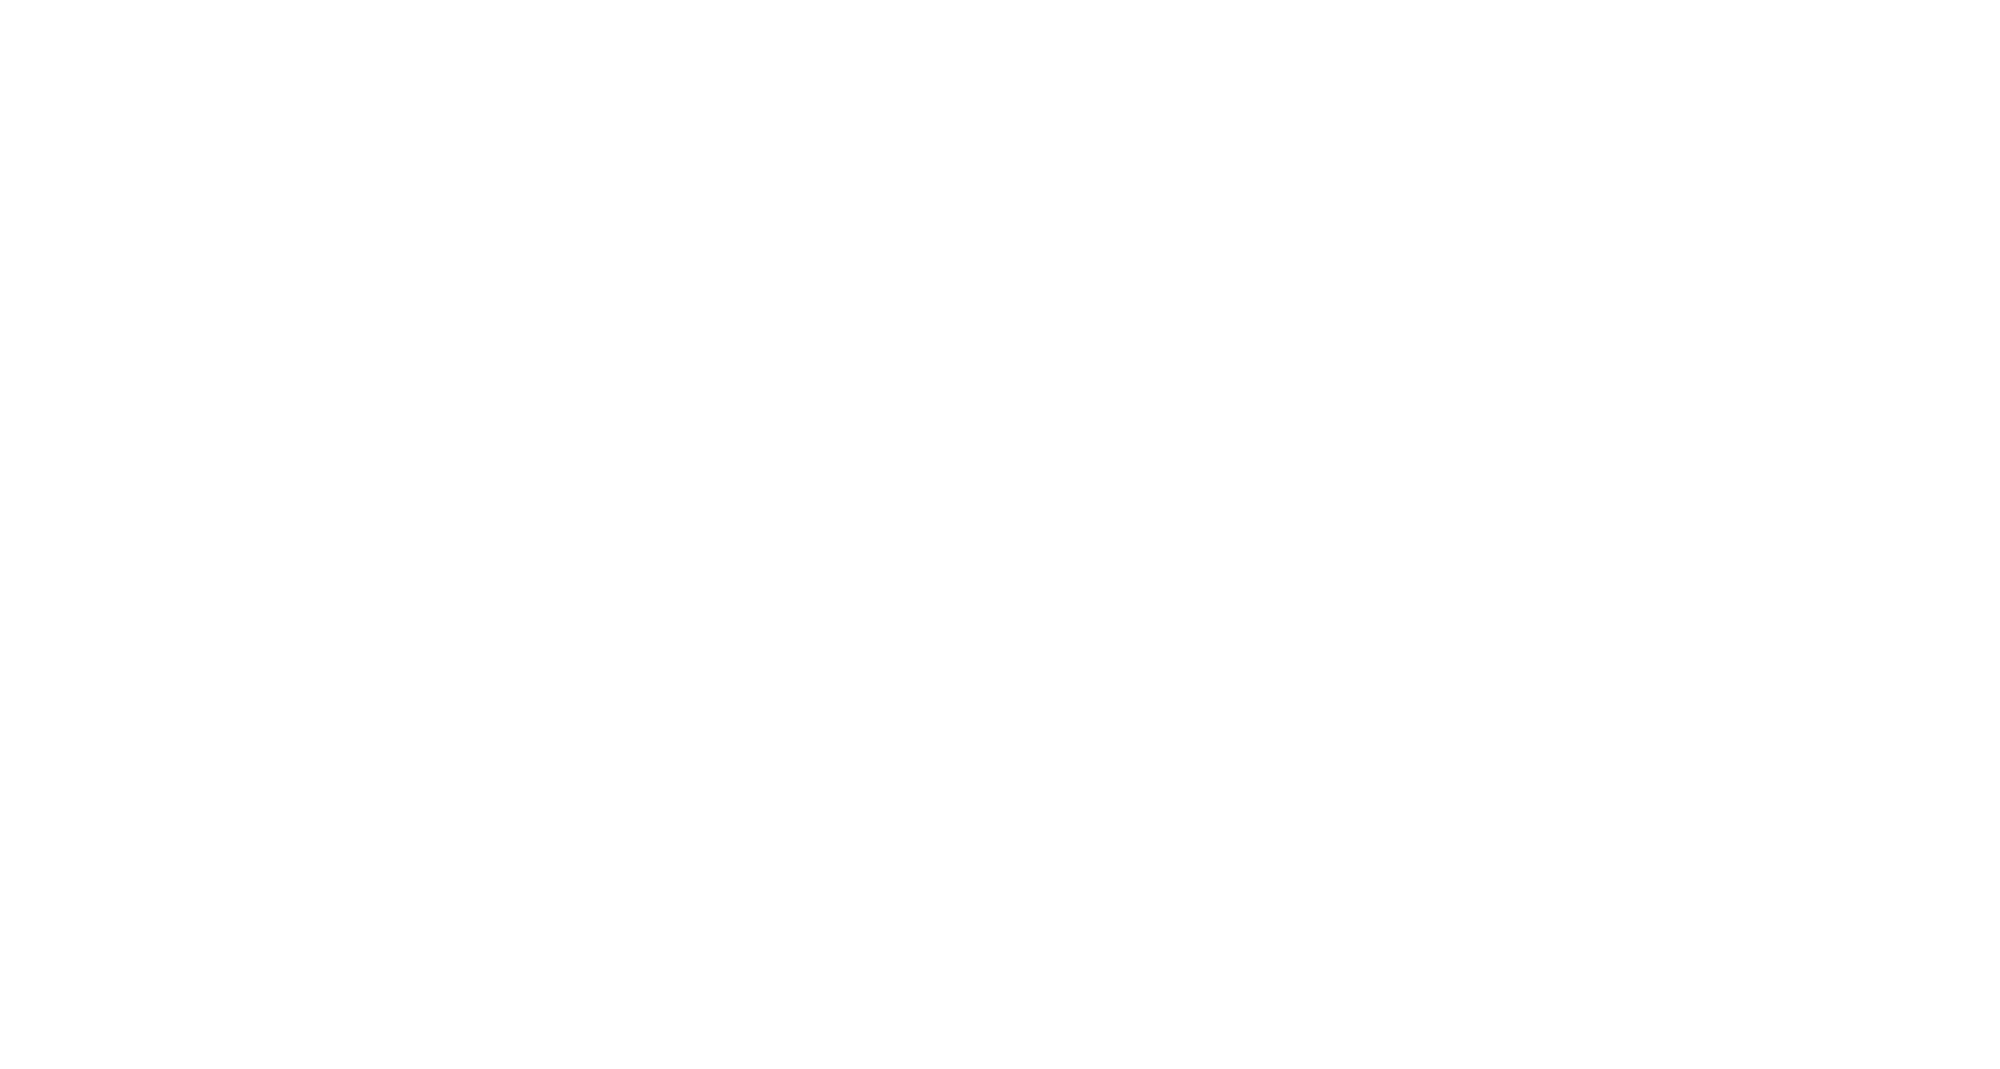 RTL TVI